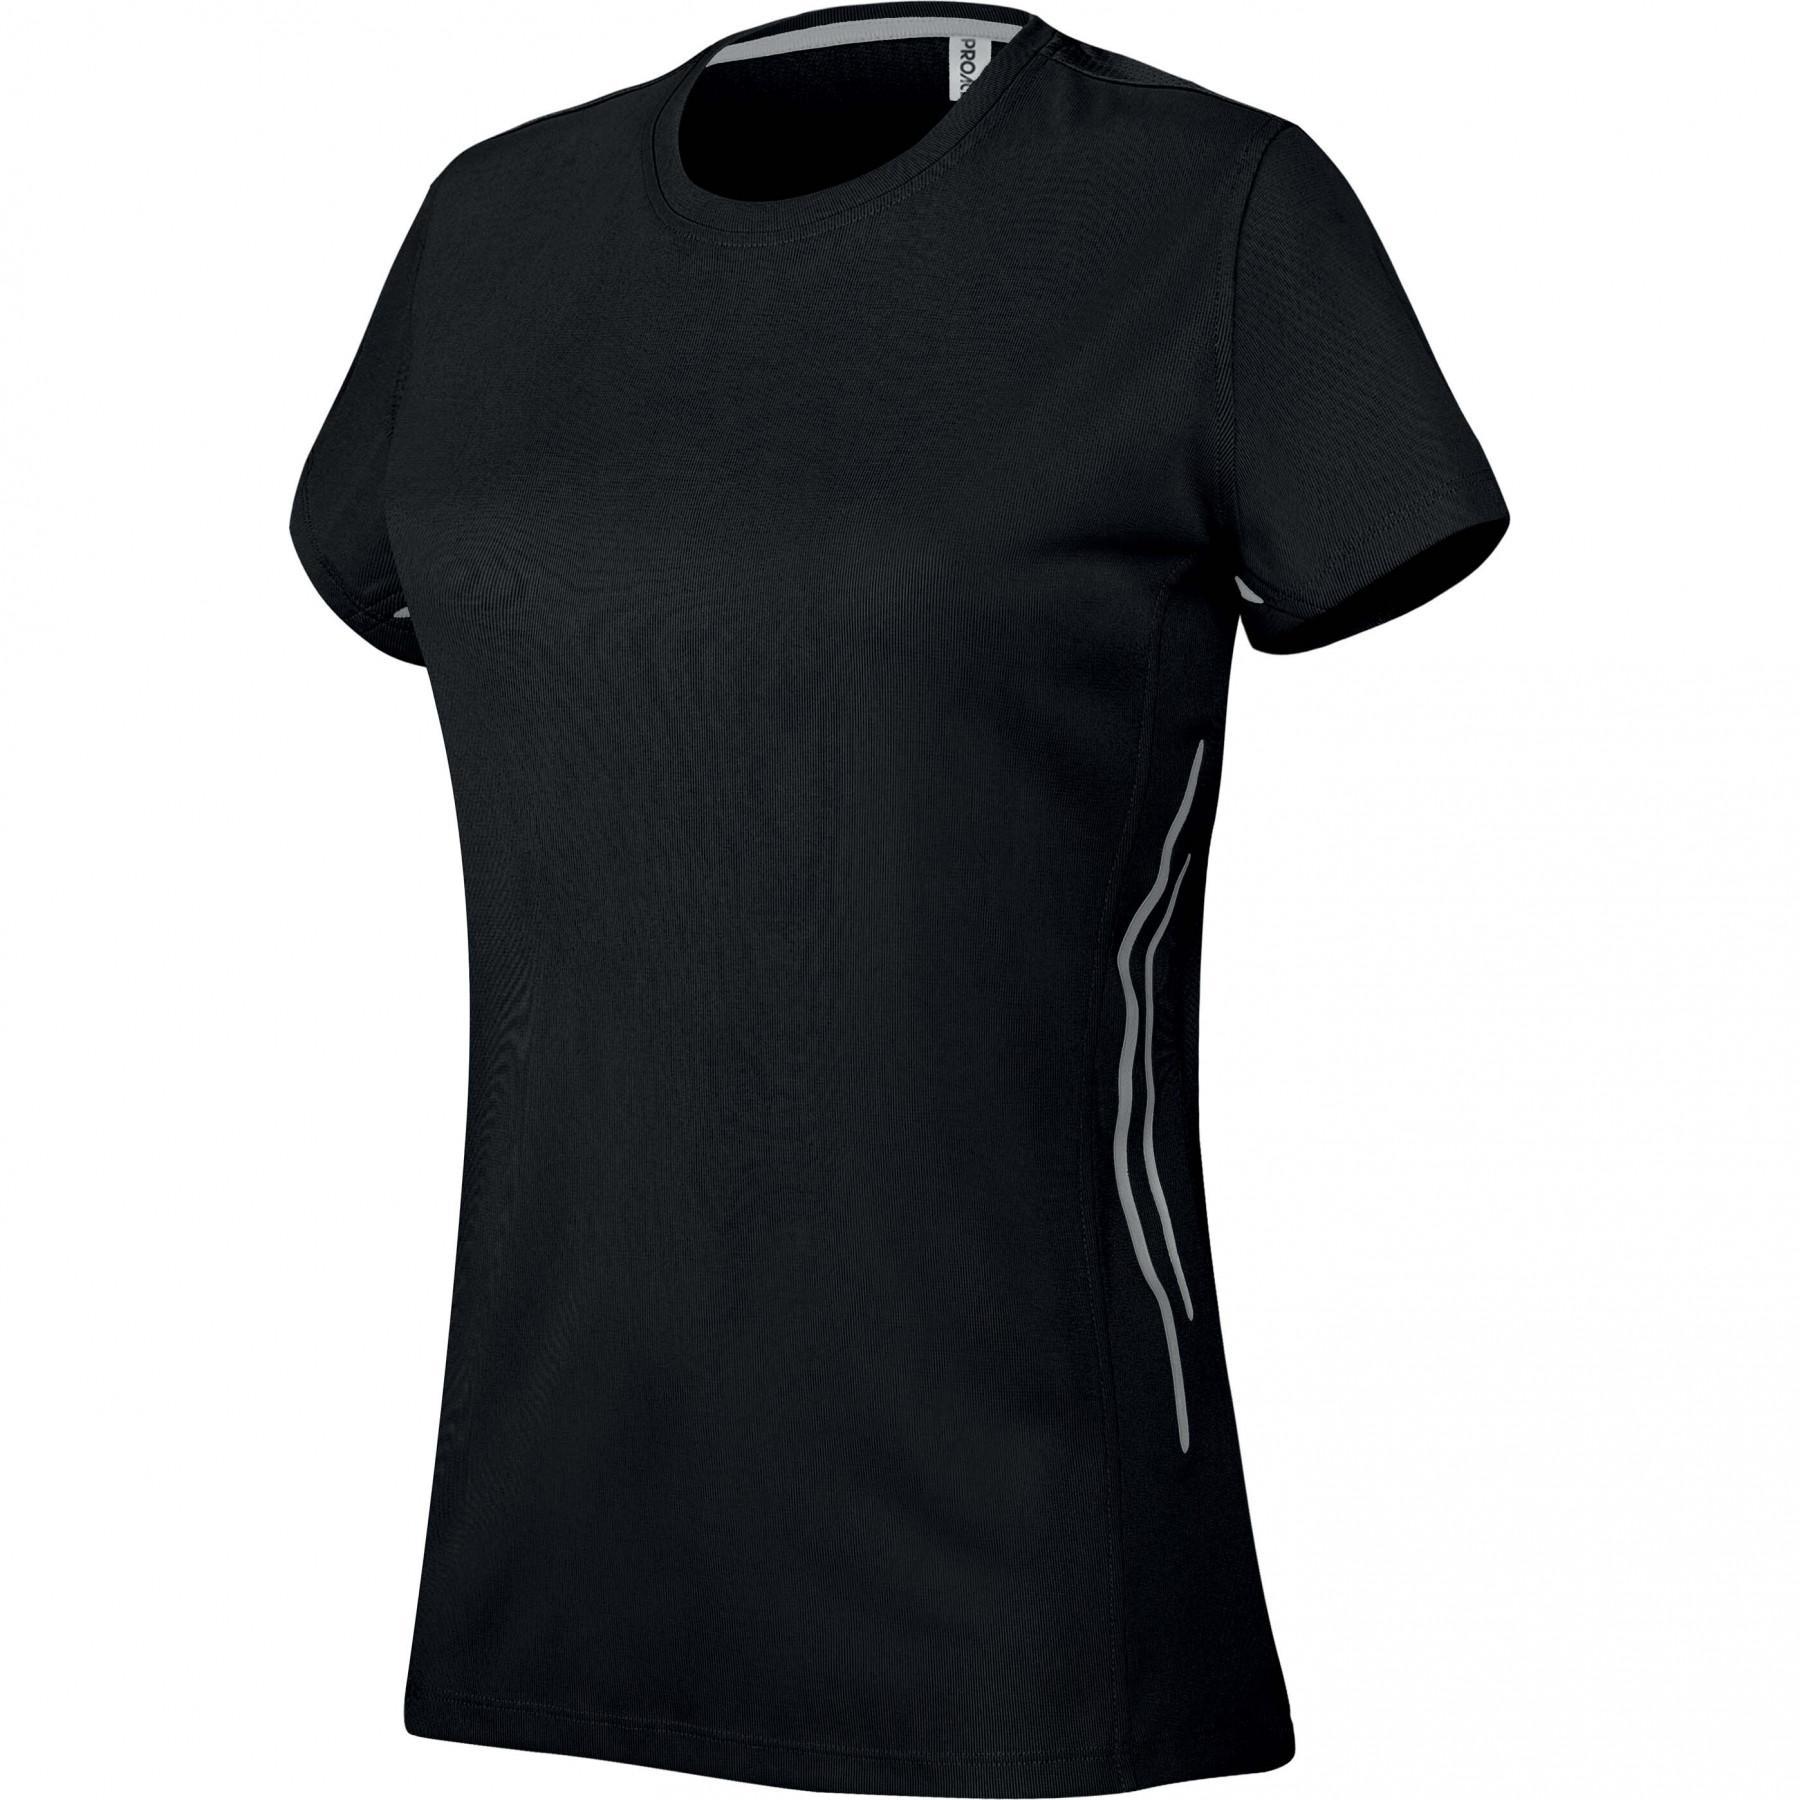 T-Shirt femme bi-matière Proact Sport